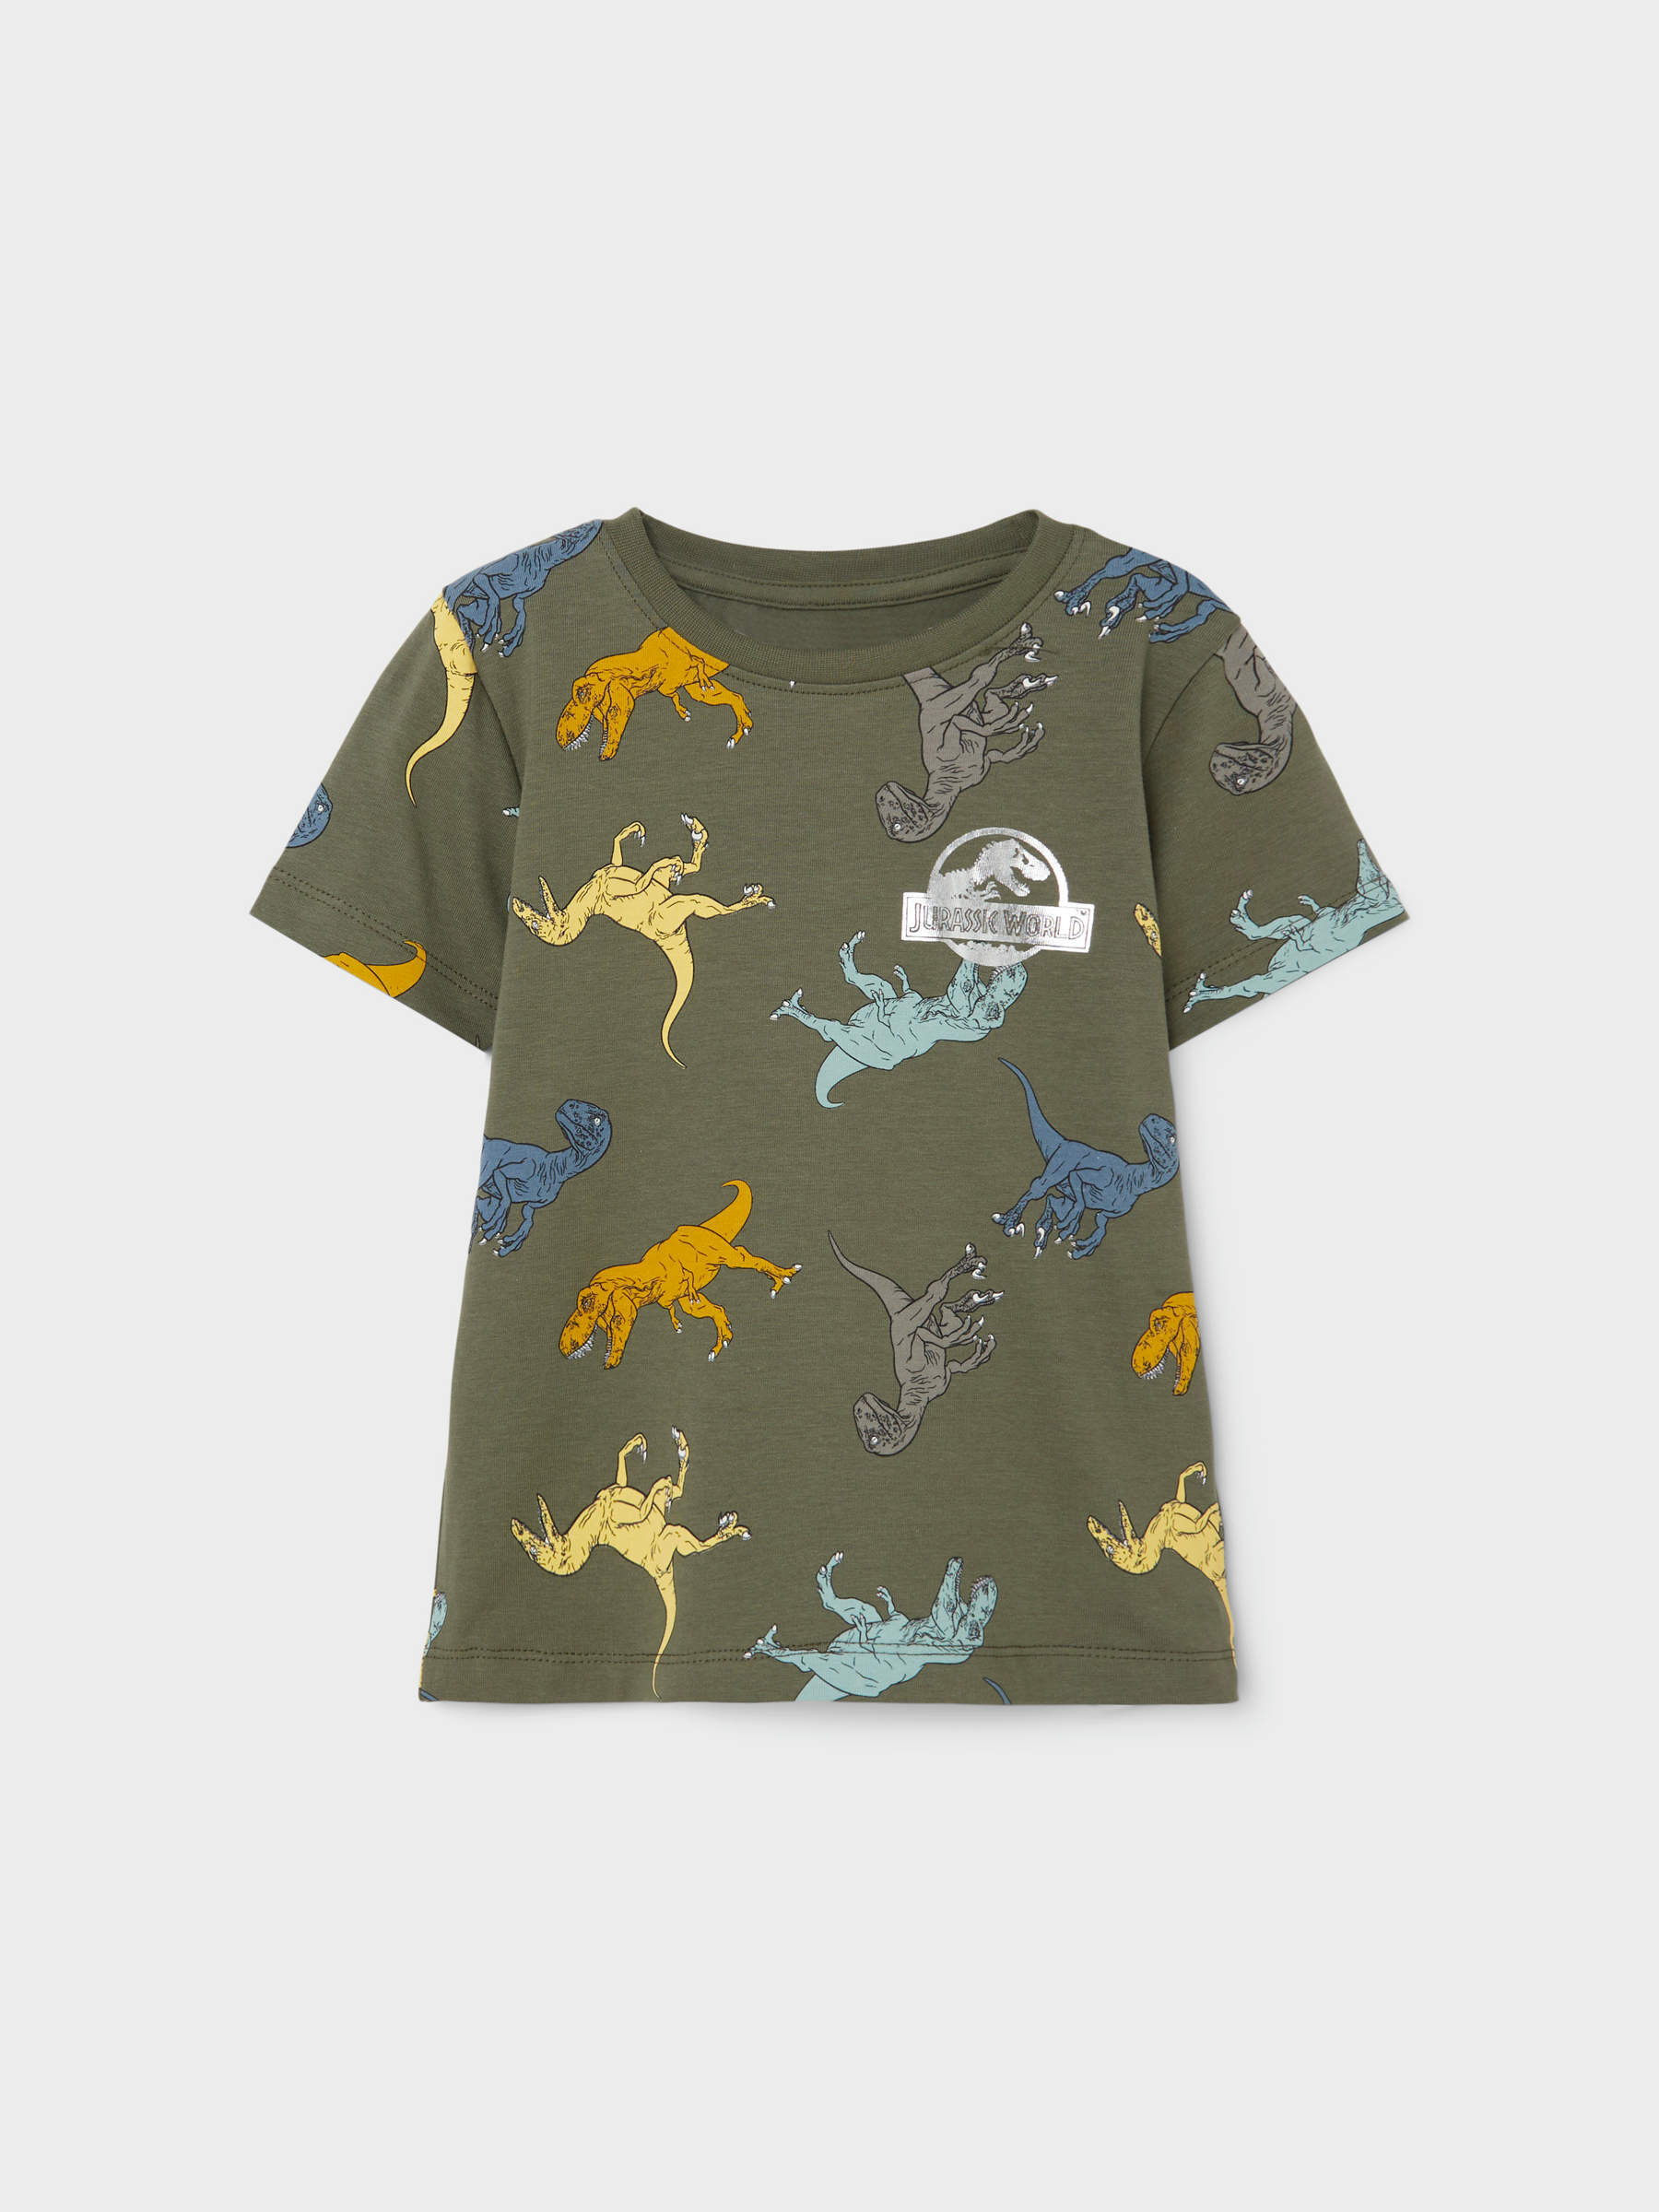 Jurassic World T-shirt For Boys From Primark 